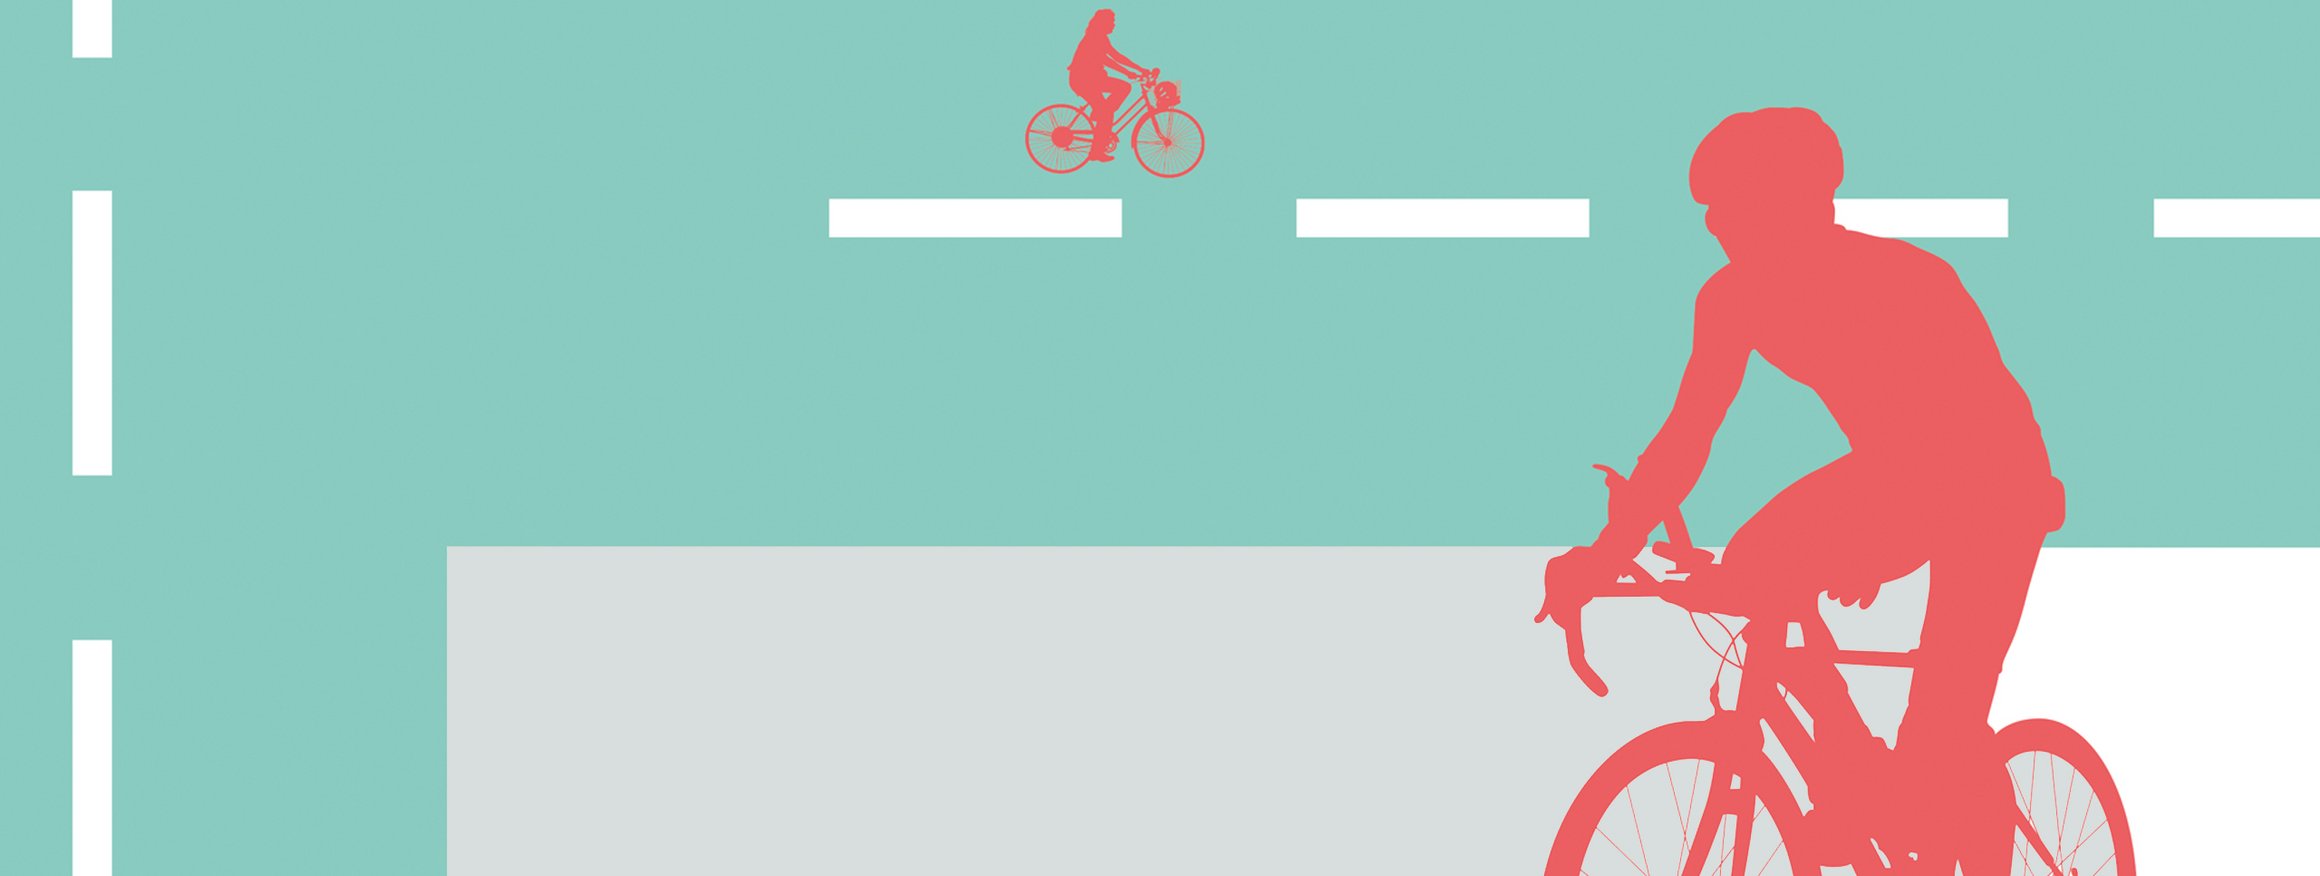 Die Illustration zeigt rote Fahrradfahrer auf einer Straße